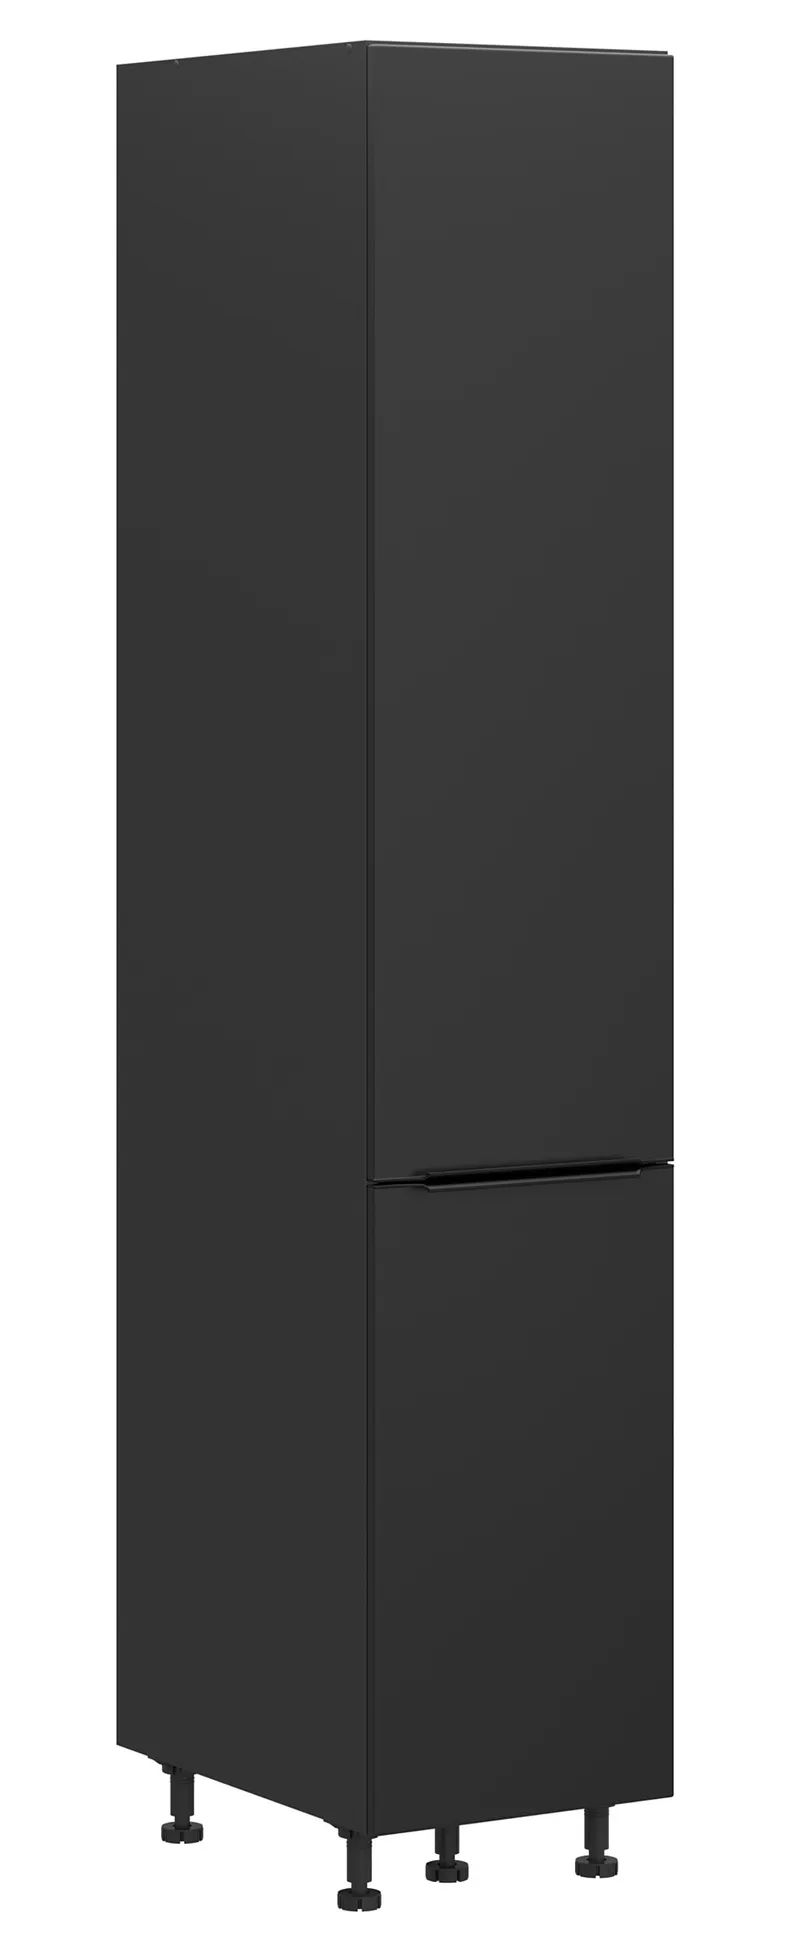 BRW Кухонный шкаф Sole L6 высотой 40 см с корзиной для груза черный матовый, черный/черный матовый FM_DC_40/207_CC-CA/CAM фото №2